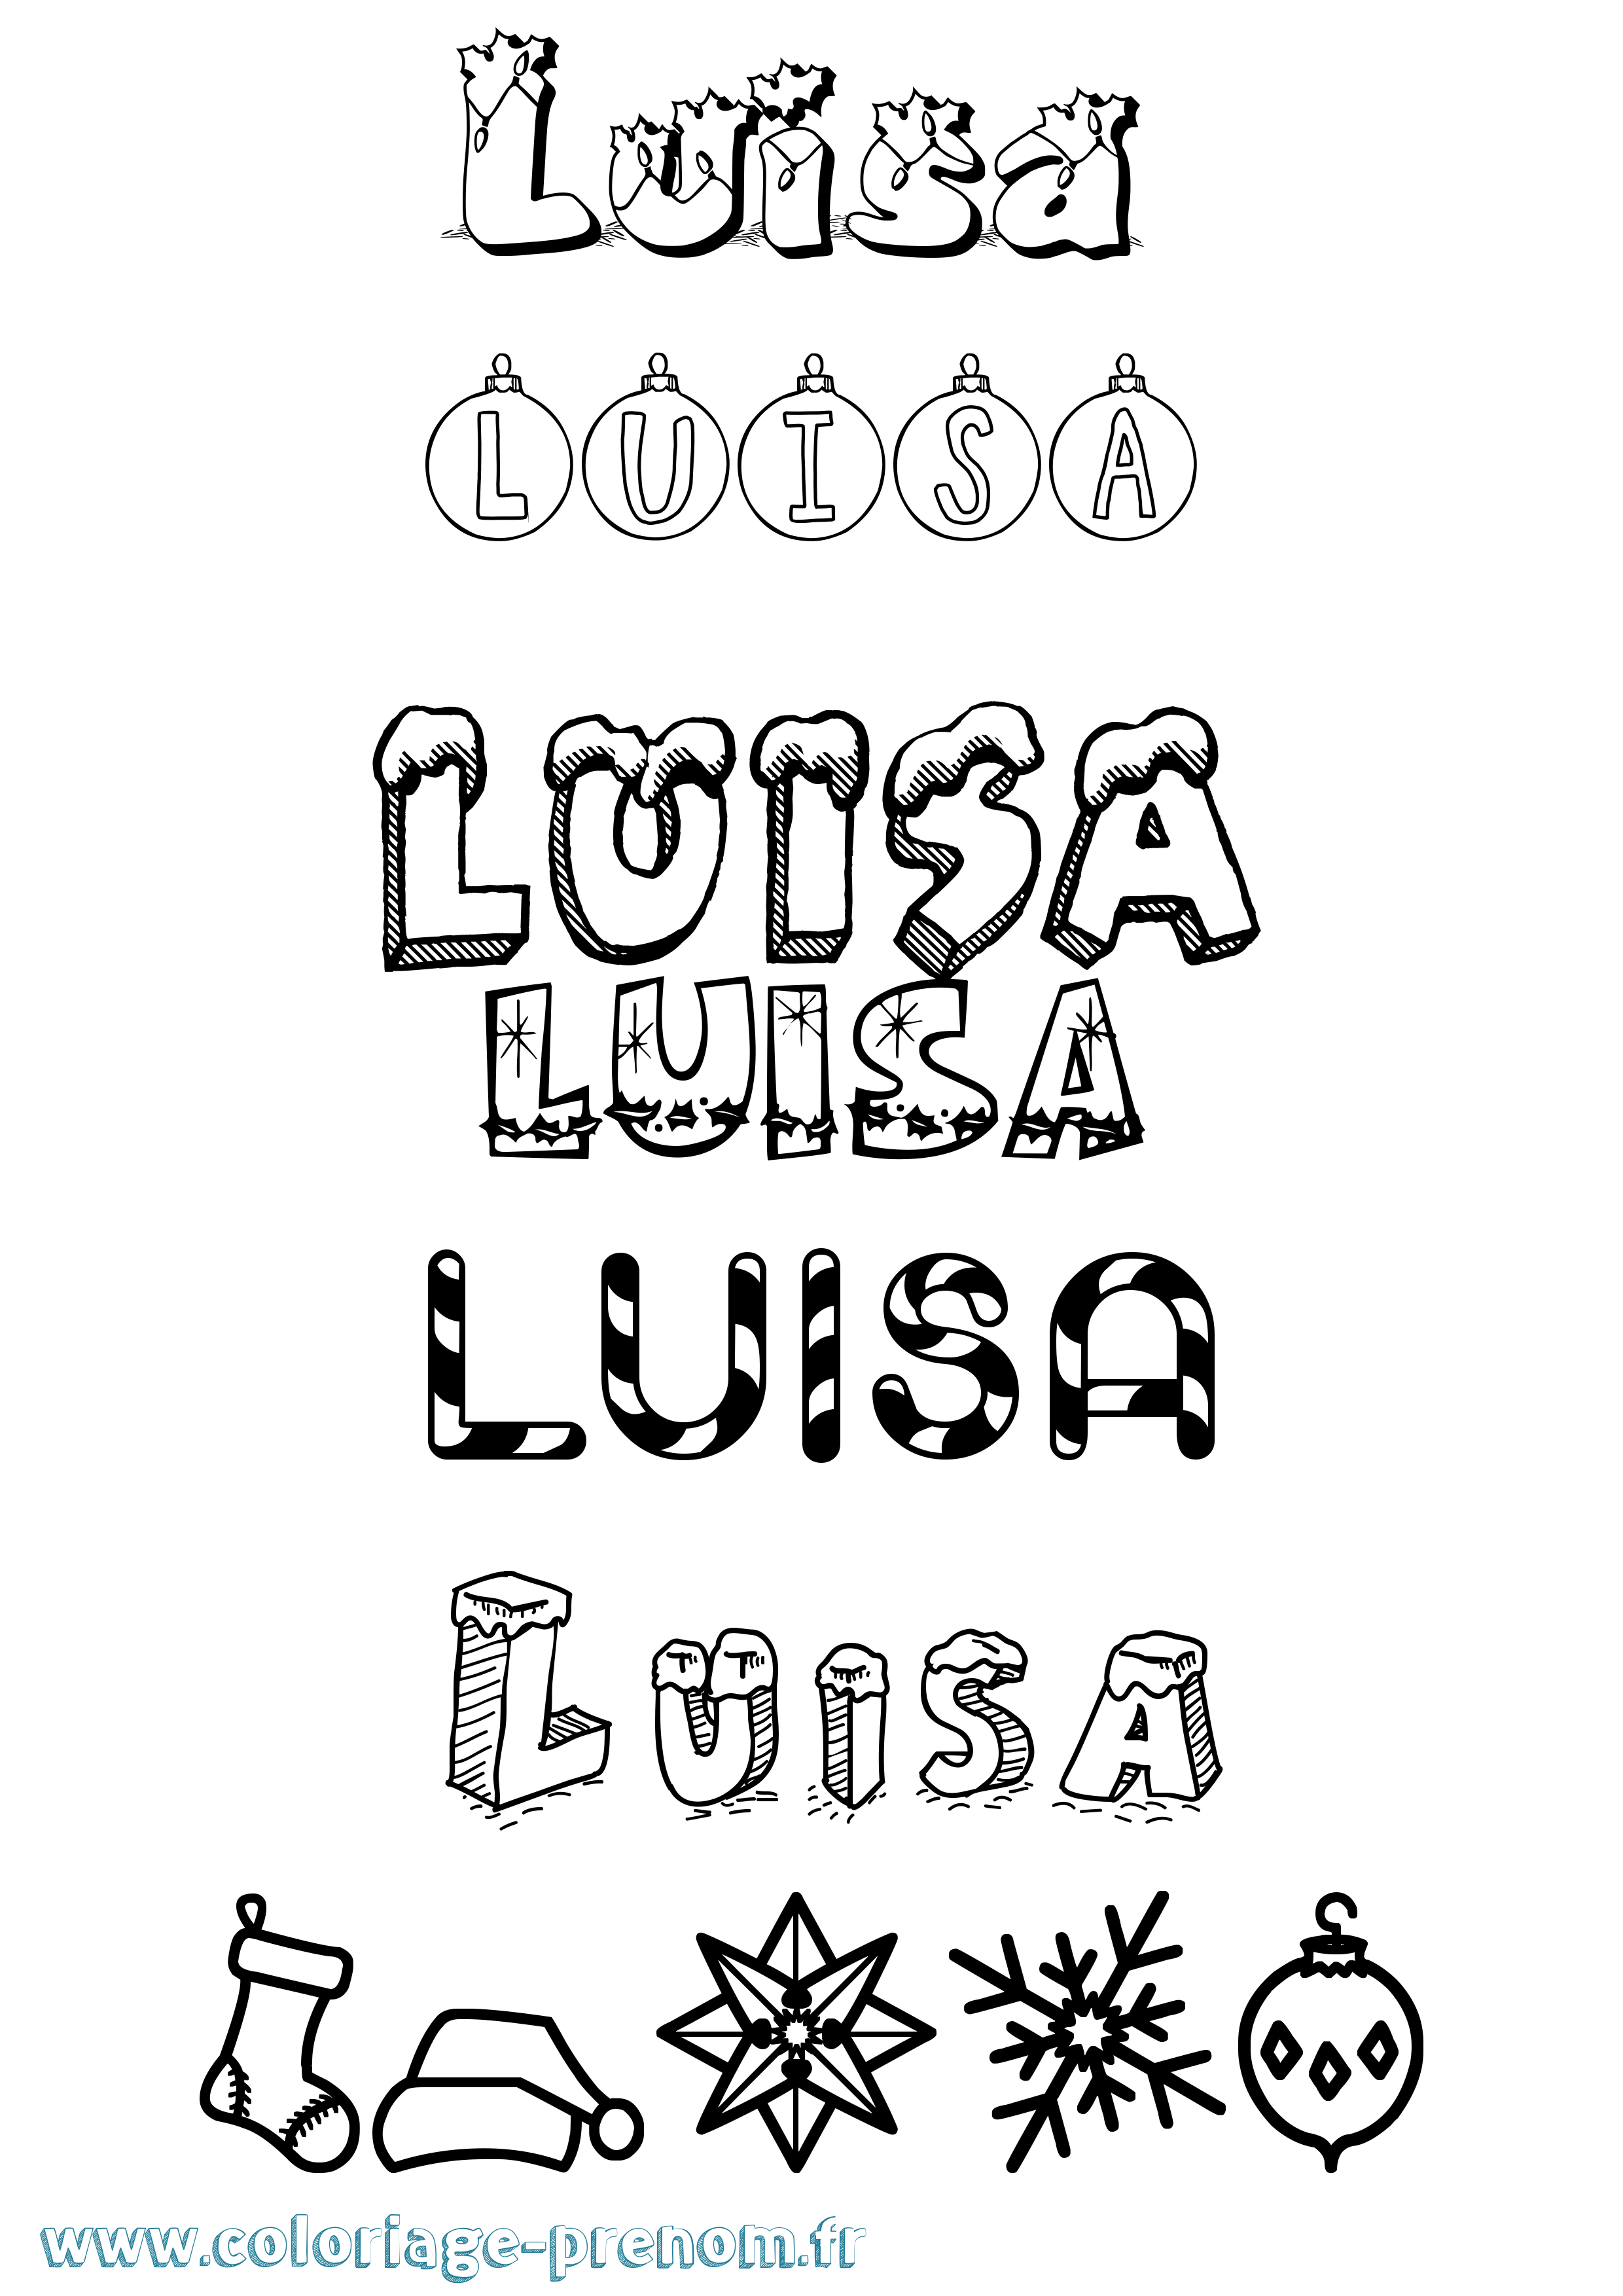 Coloriage prénom Luisa